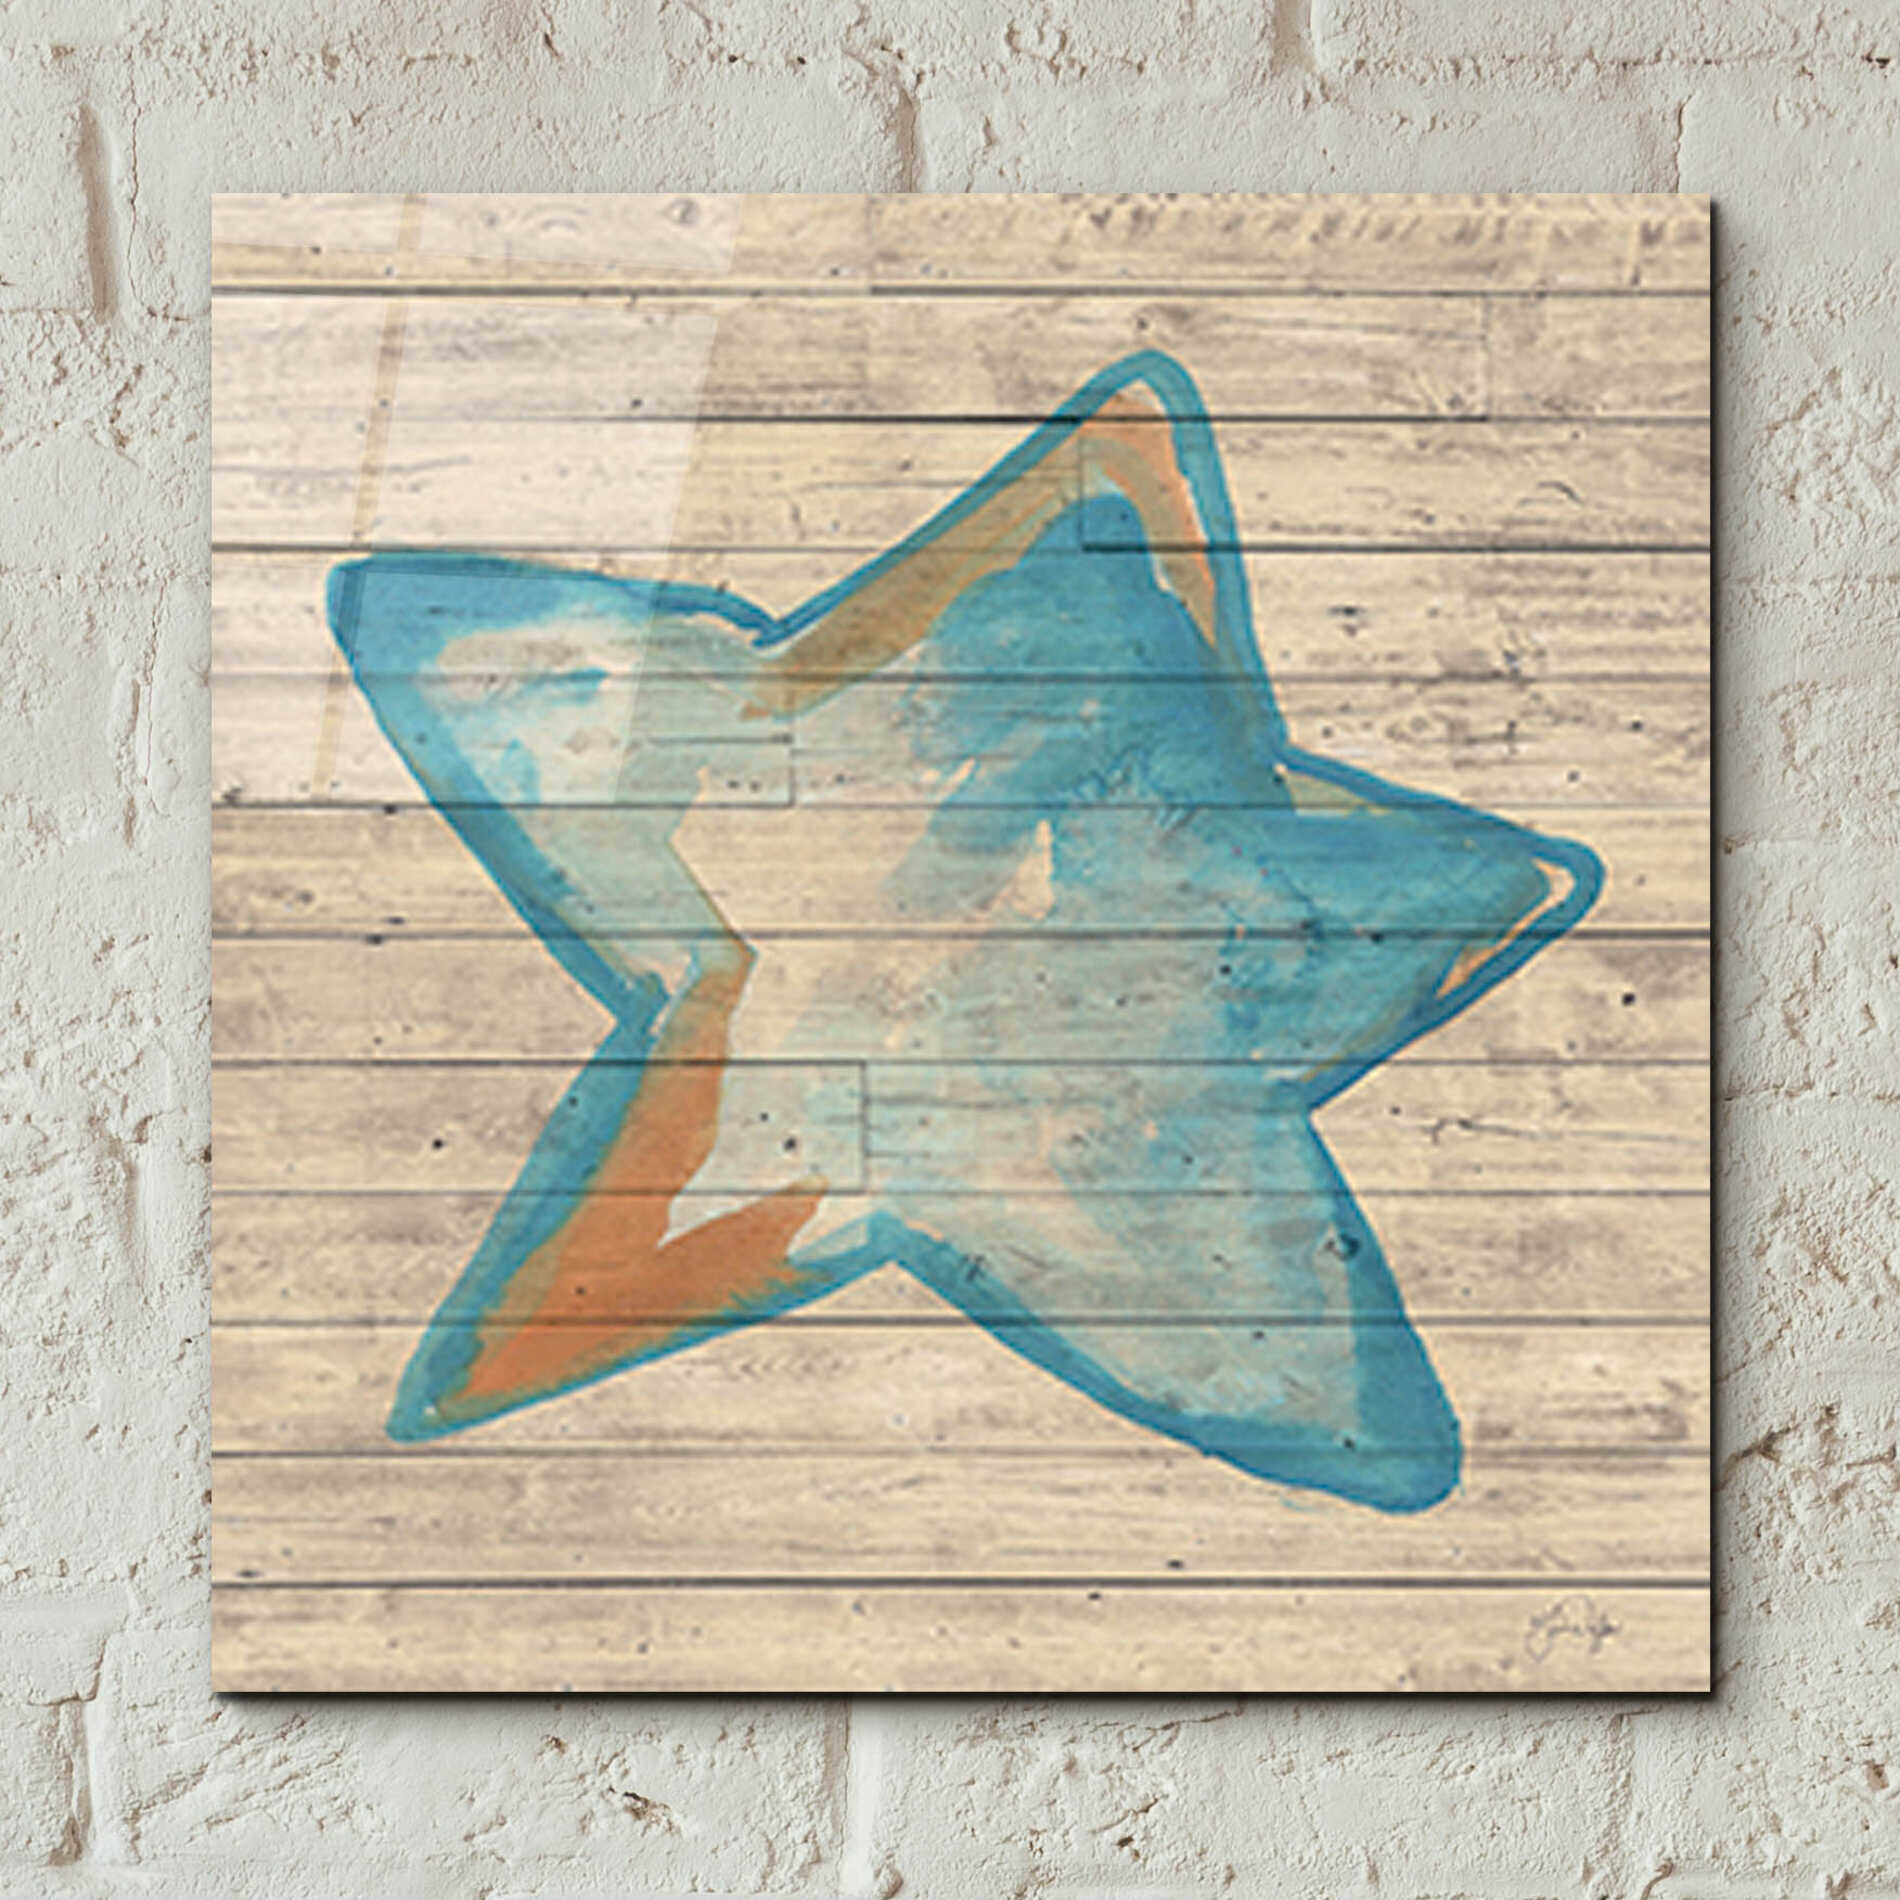 Epic Art 'A Starfish Wish' by Yass Naffas Designs, Acrylic Glass Wall Art,12x12